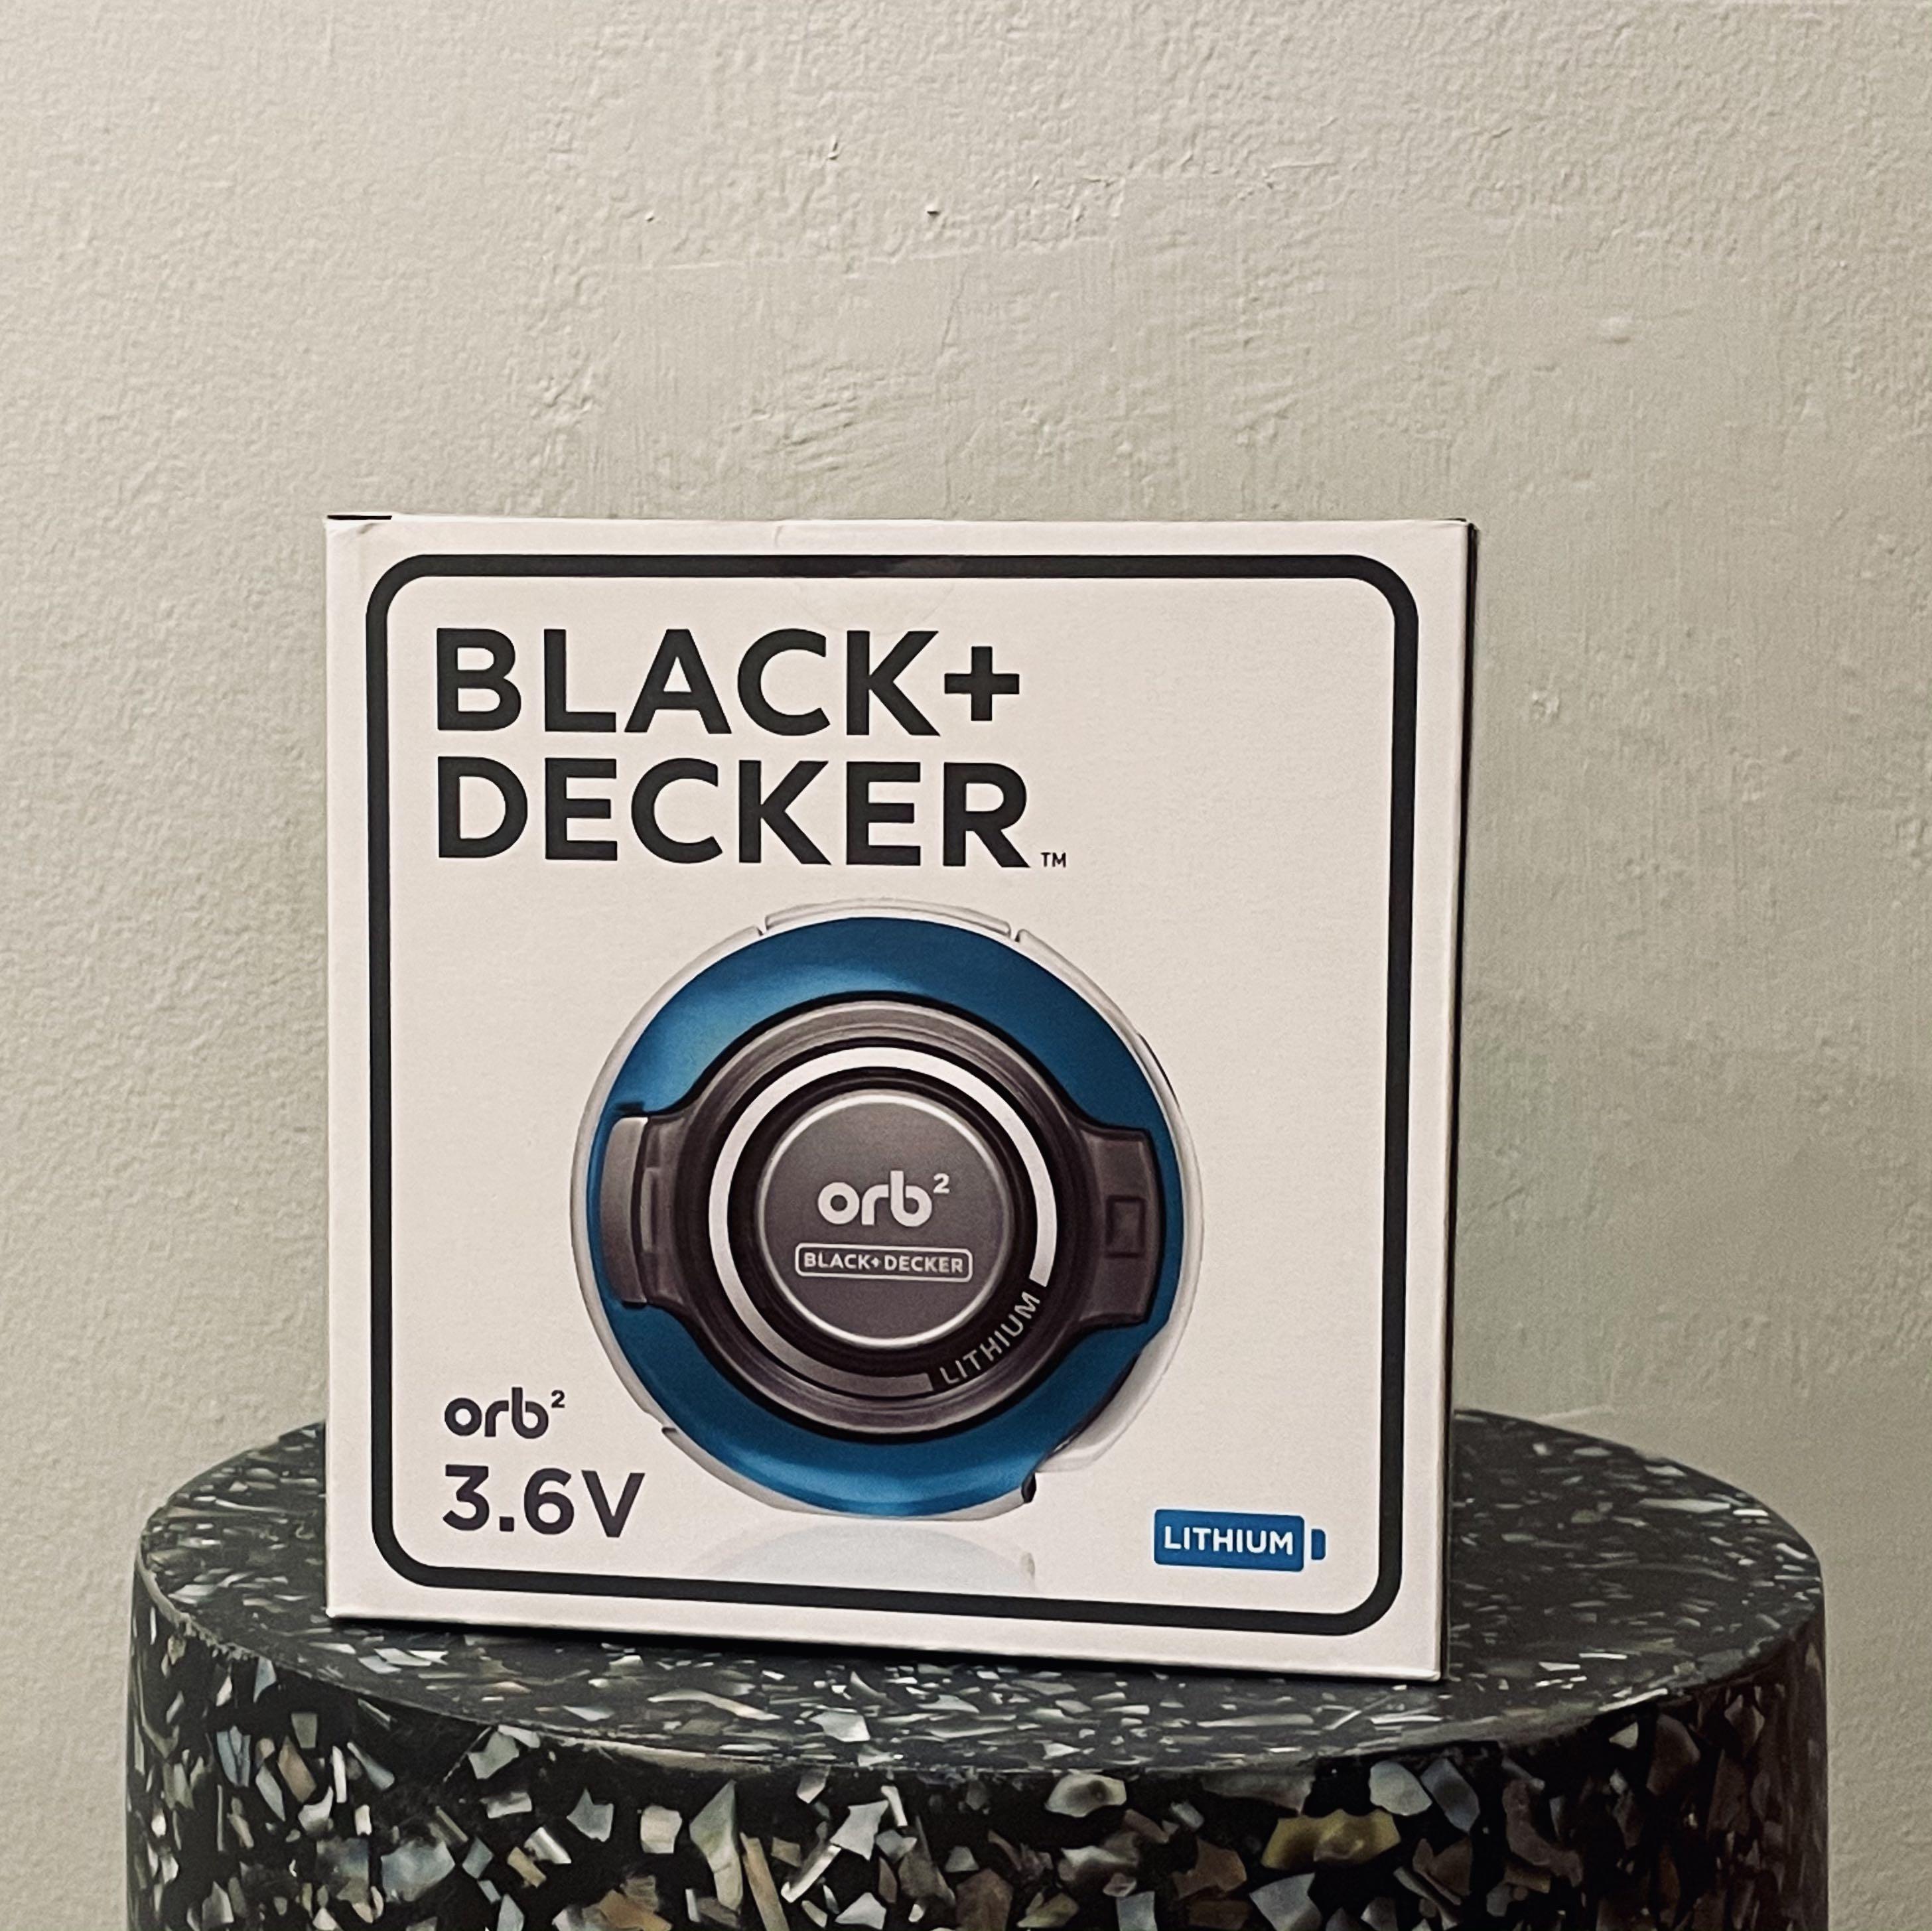 Black Decker Orb Handheld Vacuum Tv Home Appliances Vacuum Cleaner Housekeeping On Carousell